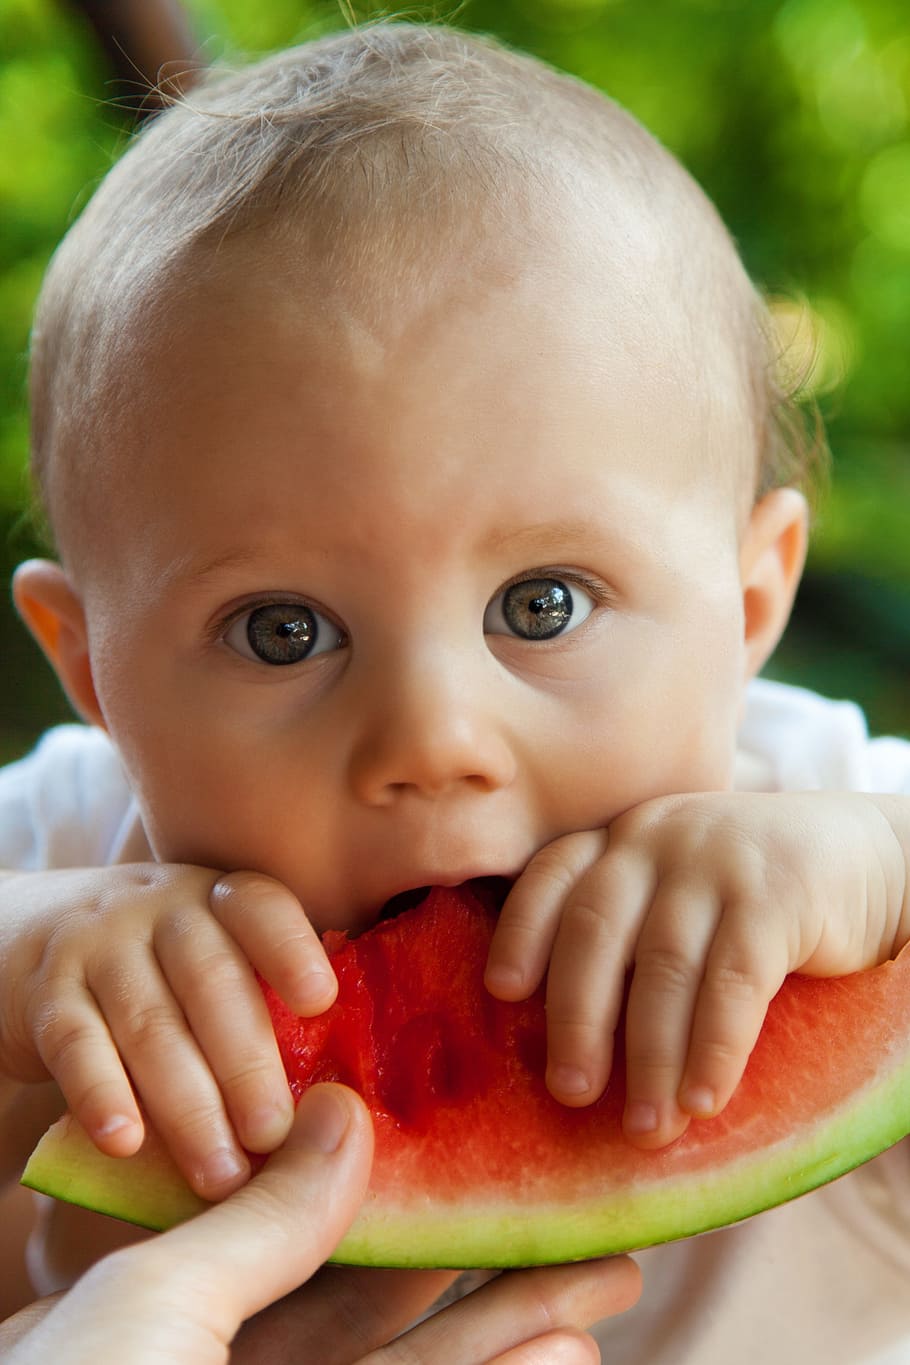 bayi makan semangka, bayi, gigitan, anak laki-laki, anak, imut, makan, makanan, buah, kesenangan